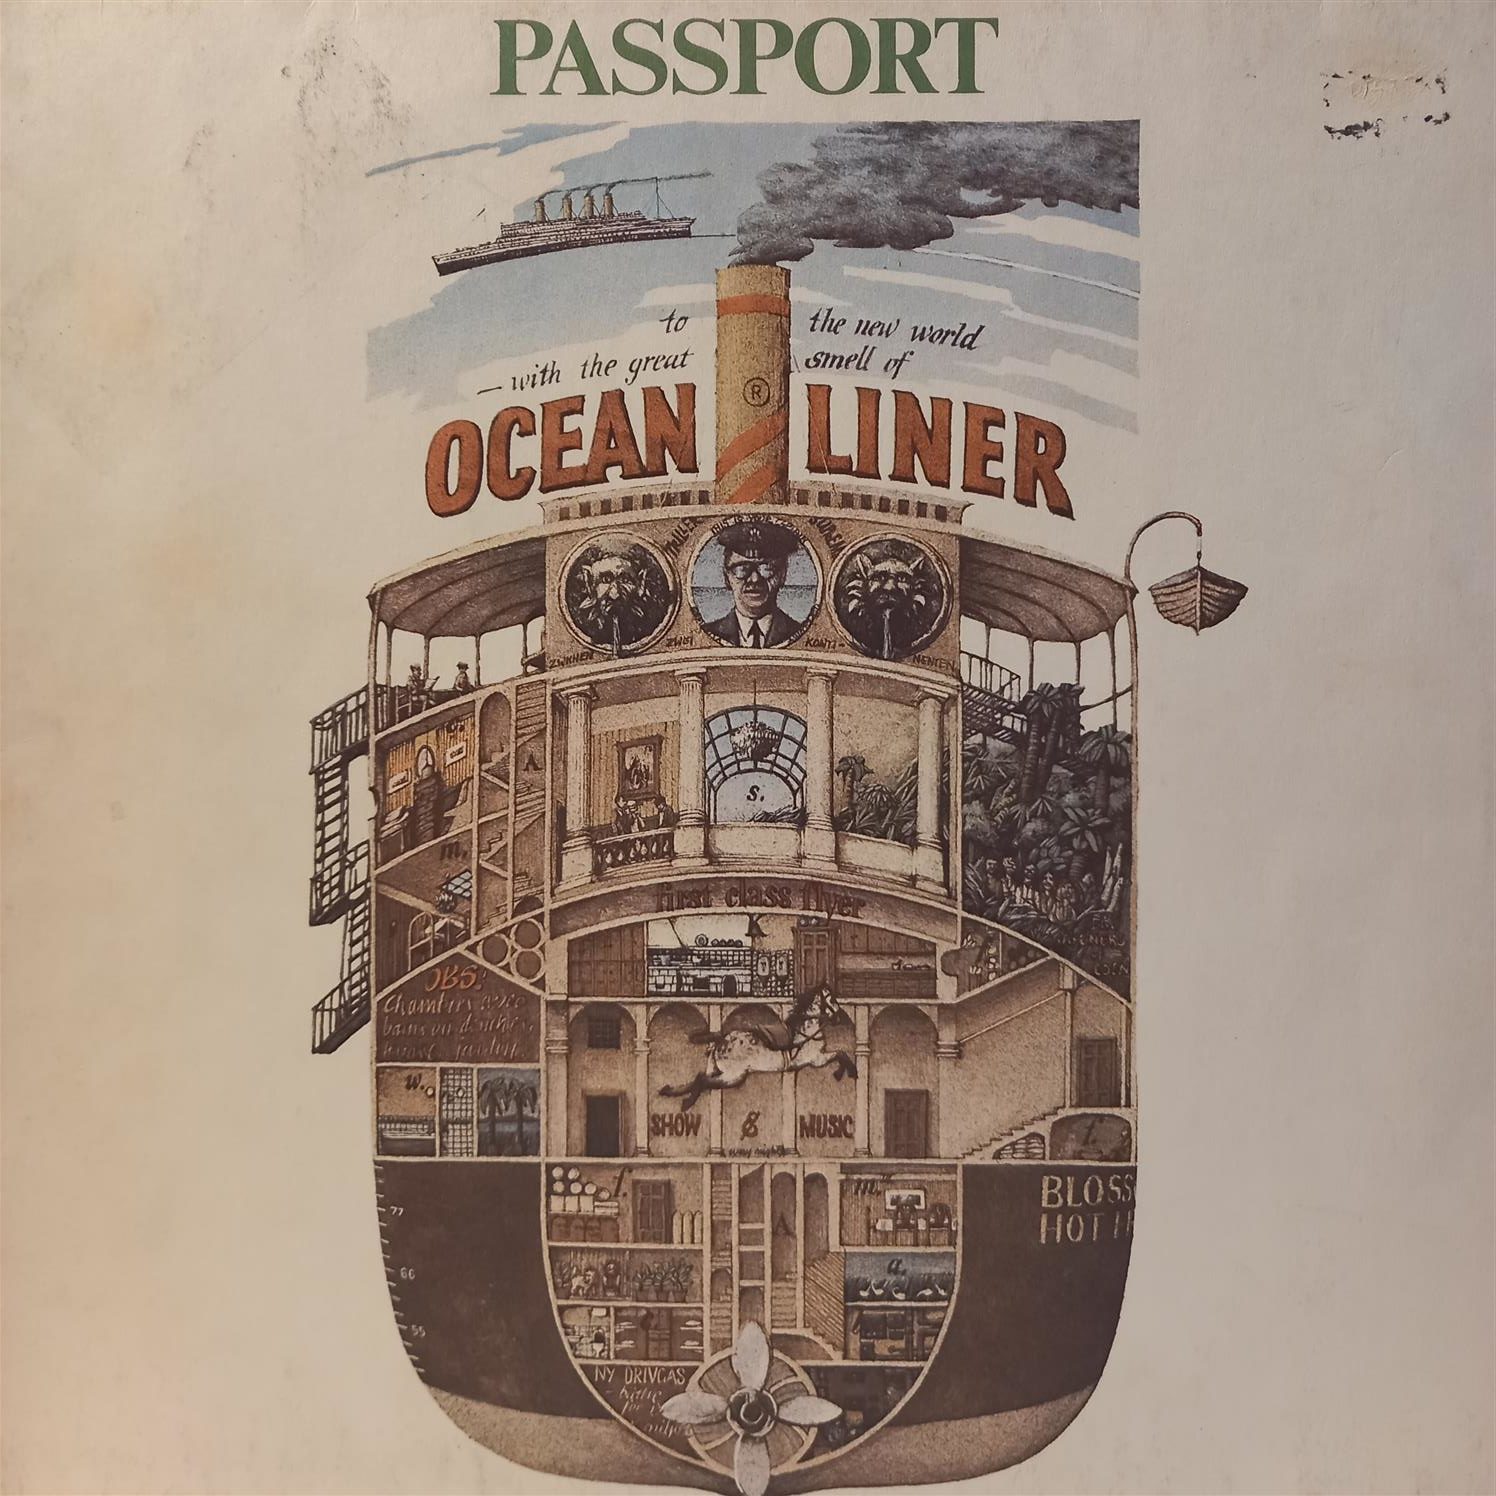 PASSPORT – OCEANLINER ON